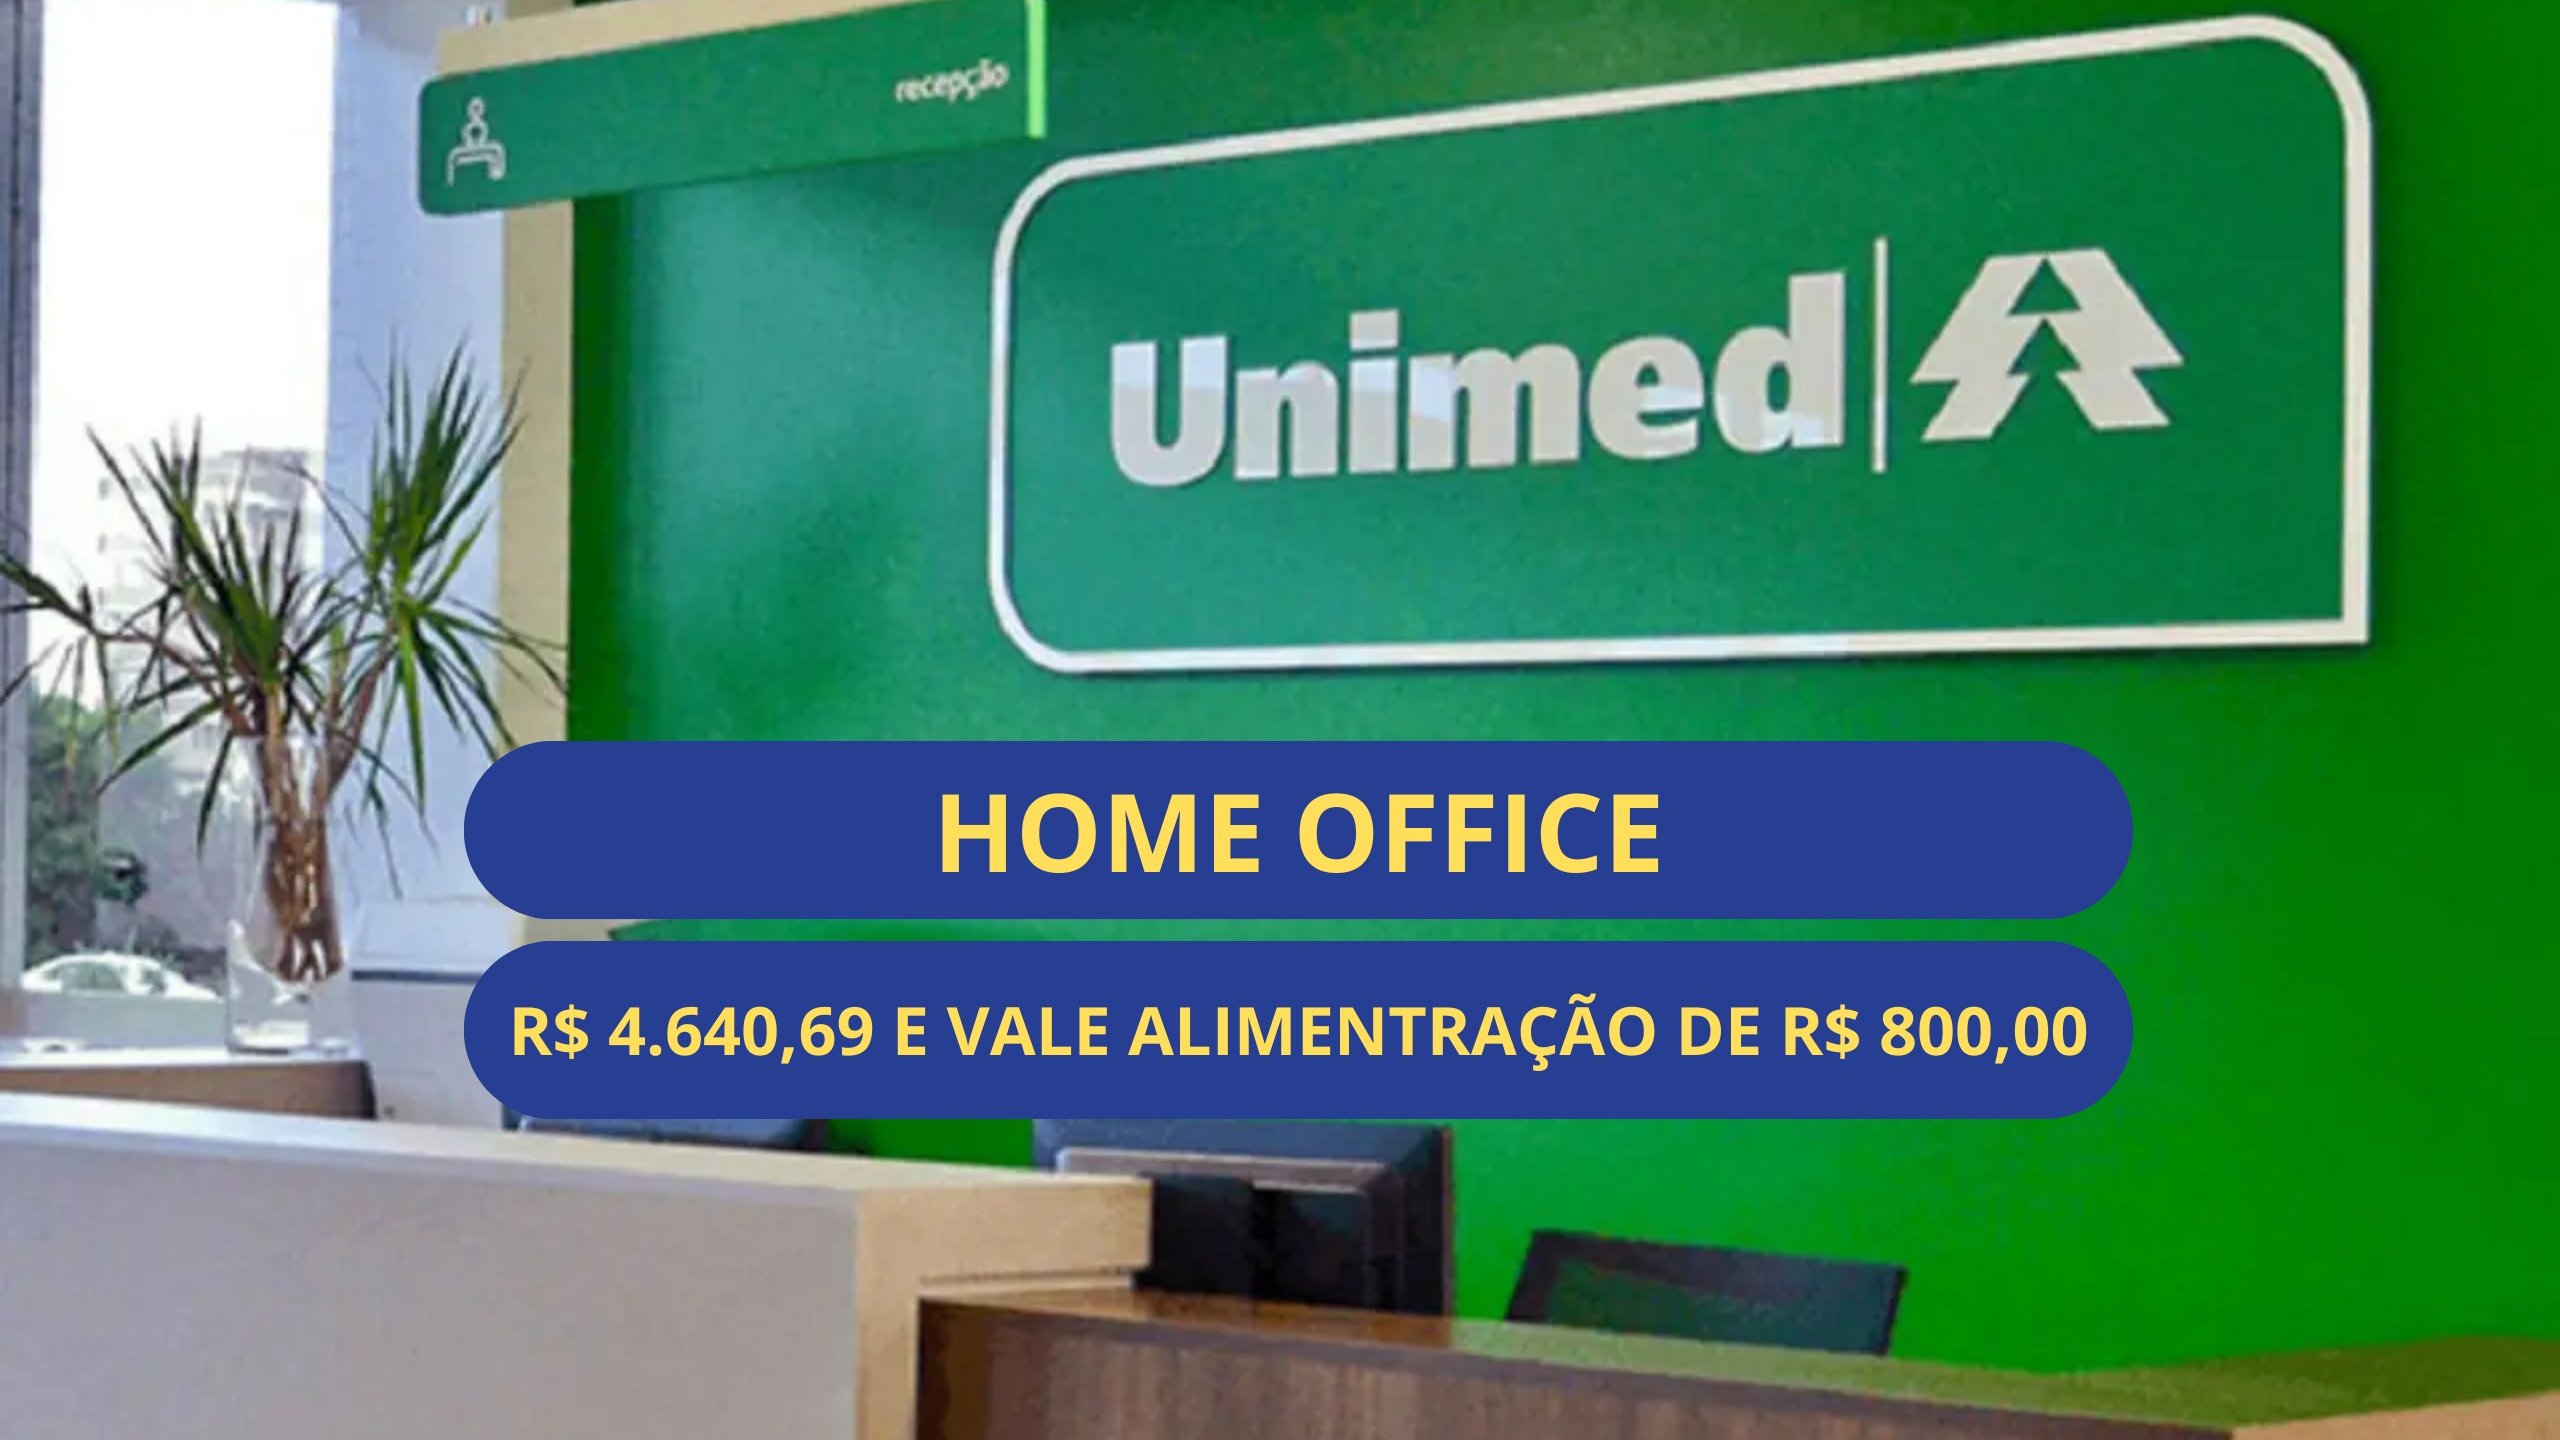 UNIMED abre vagas HOME OFFICE com salário de R$ 4.640,69 e Vale alimentação de R$ 800,00